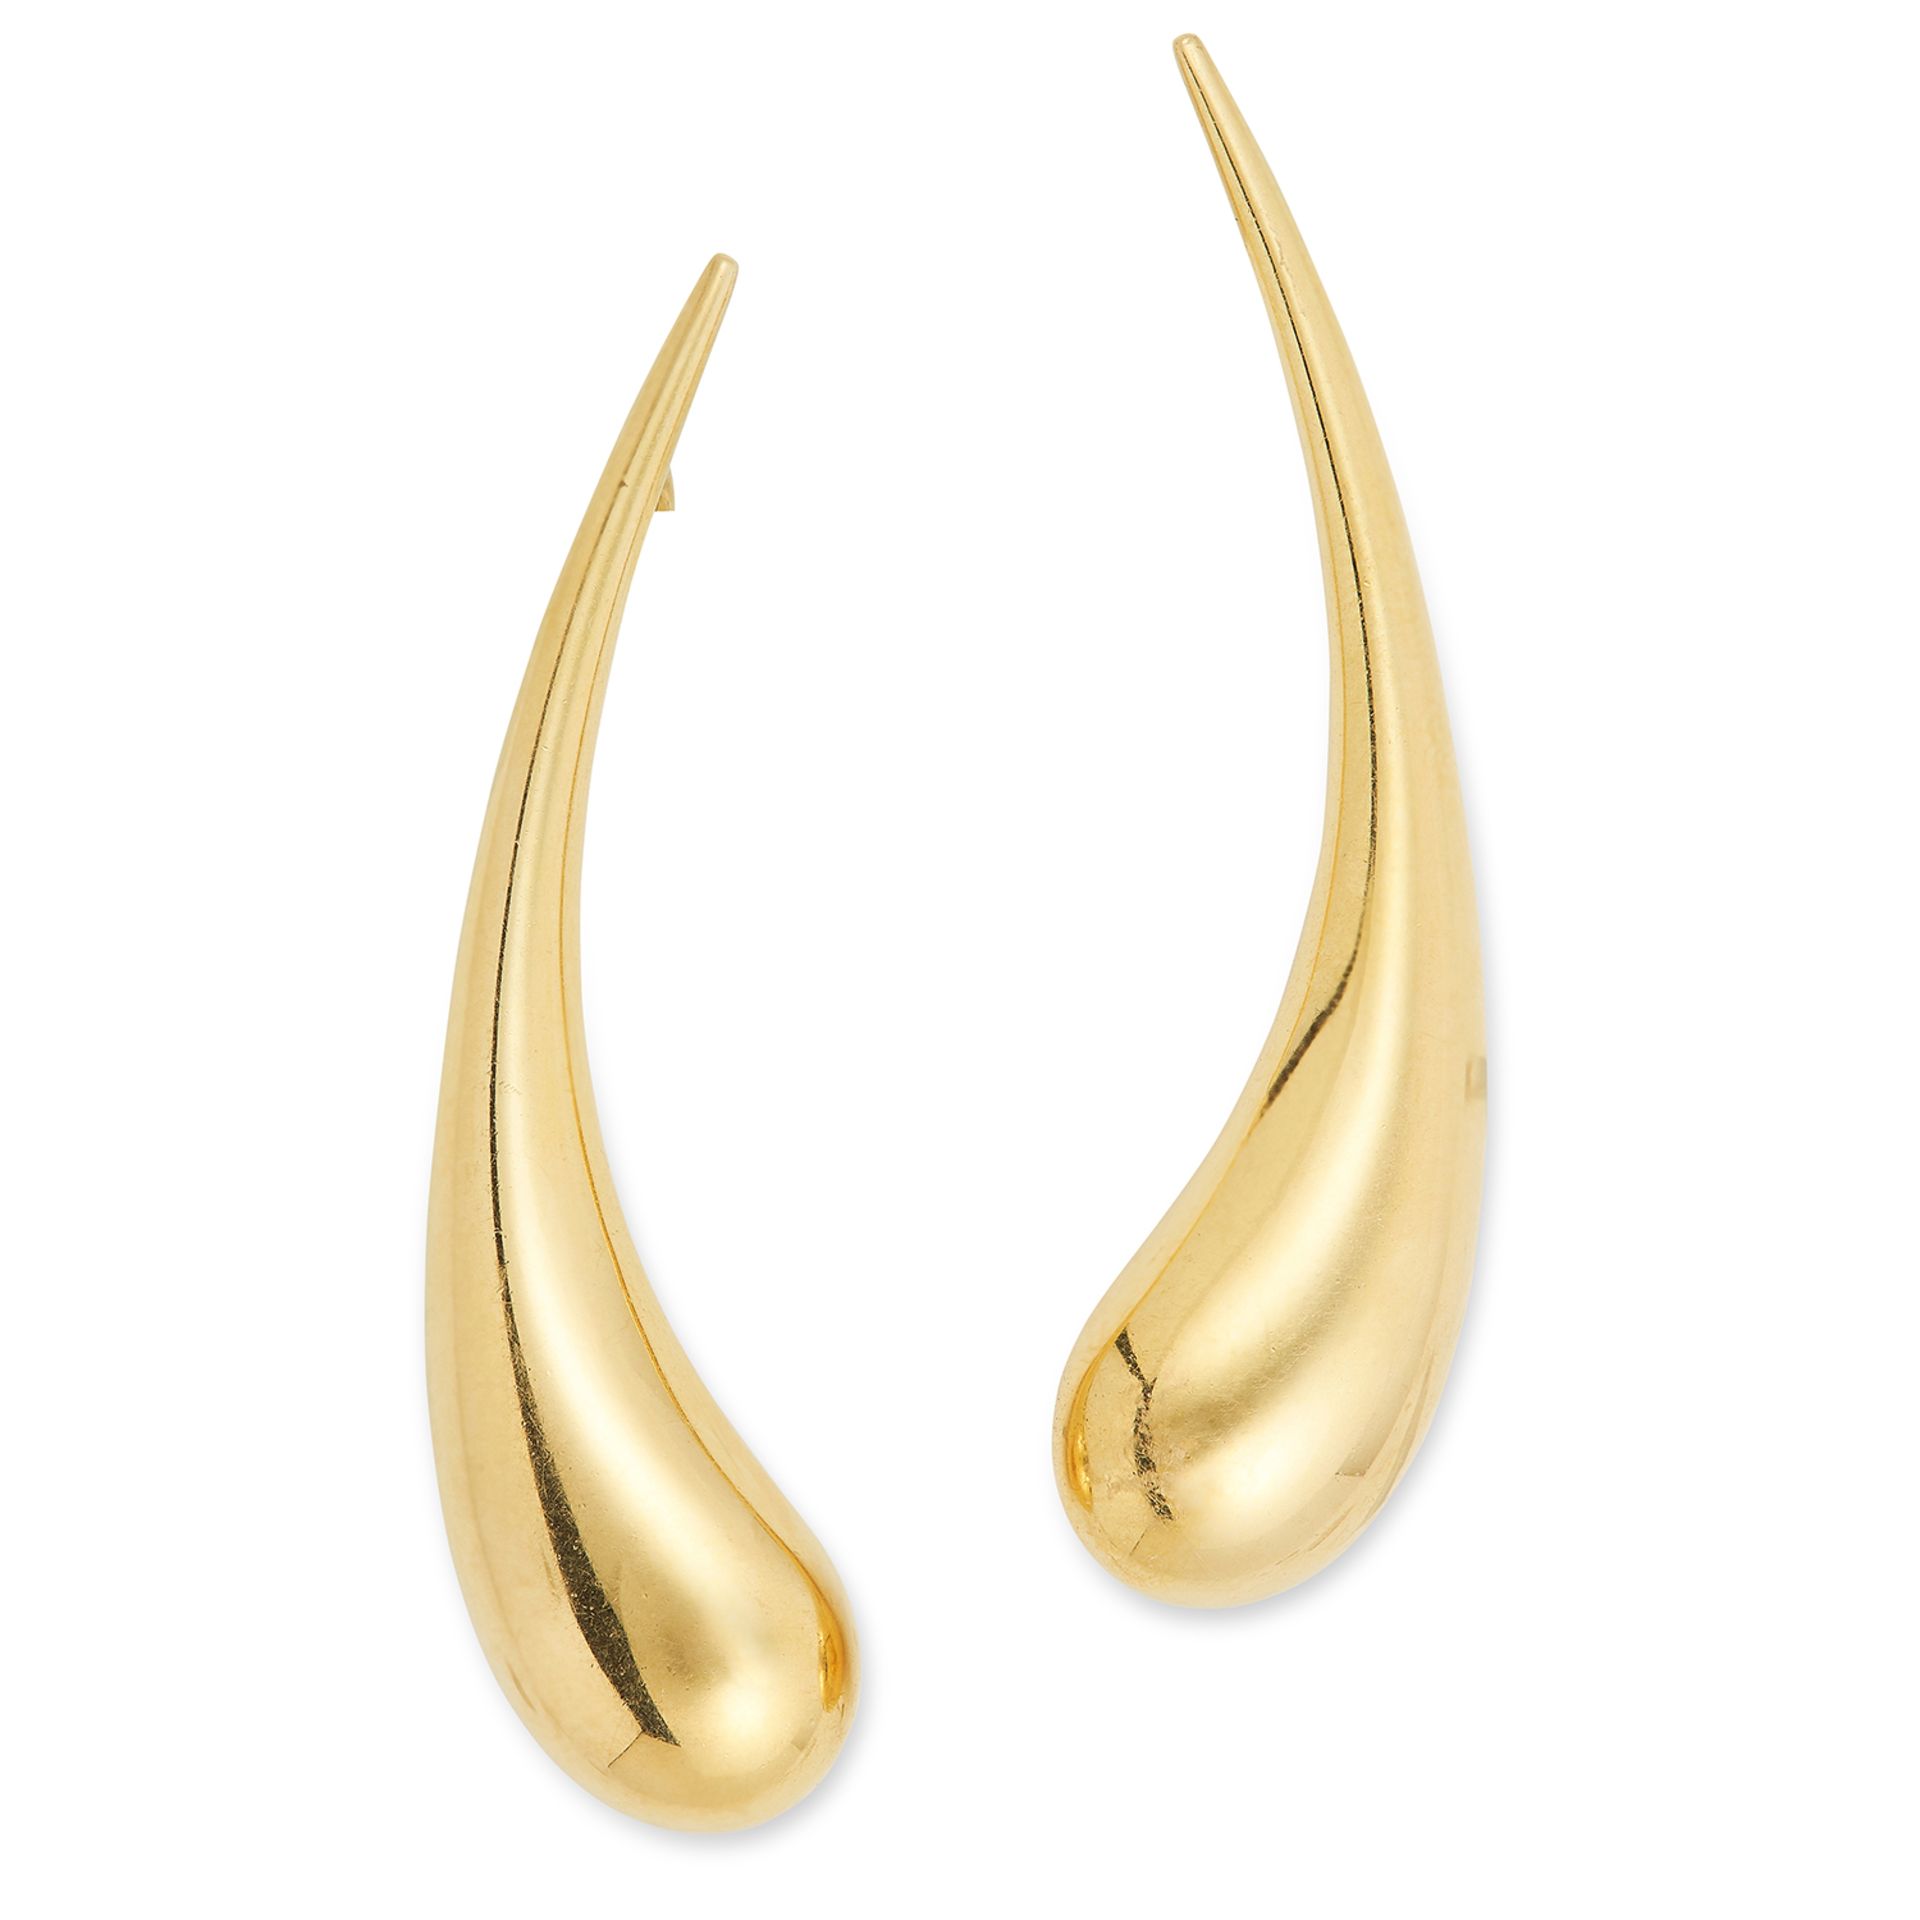 TEARDROP EARRINGS, ELSA PERETTI FOR TIFFANY in elongated design, 5.5cm, 12.6g.